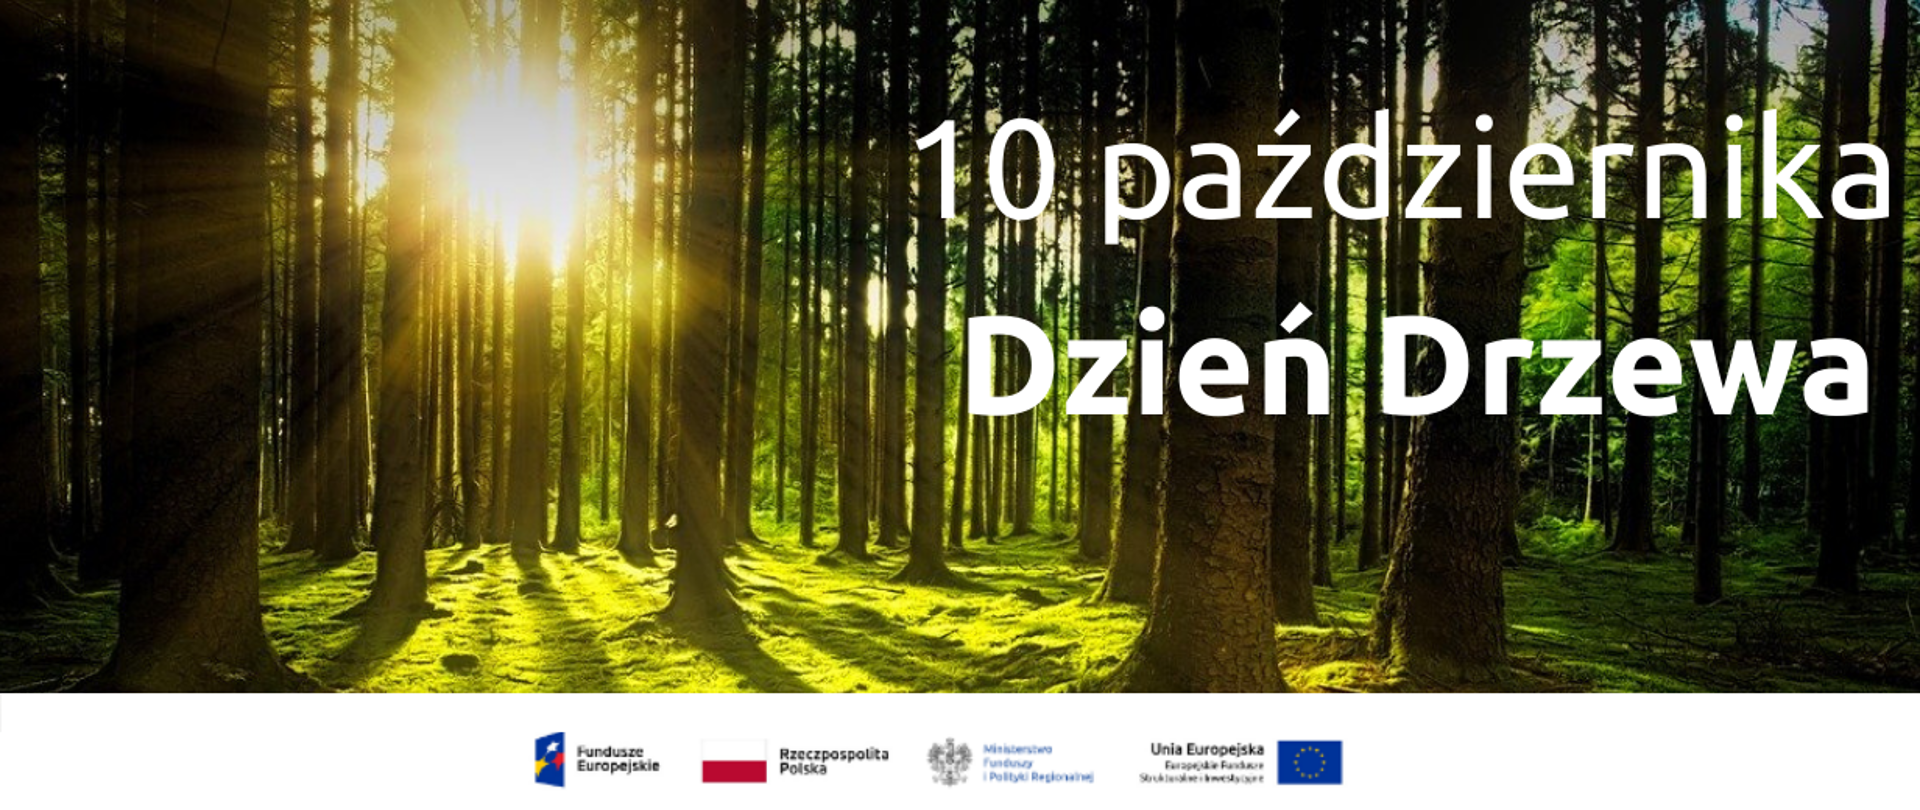 Na tle słonecznego lasu napis: "10 października Dzień Drzewa"